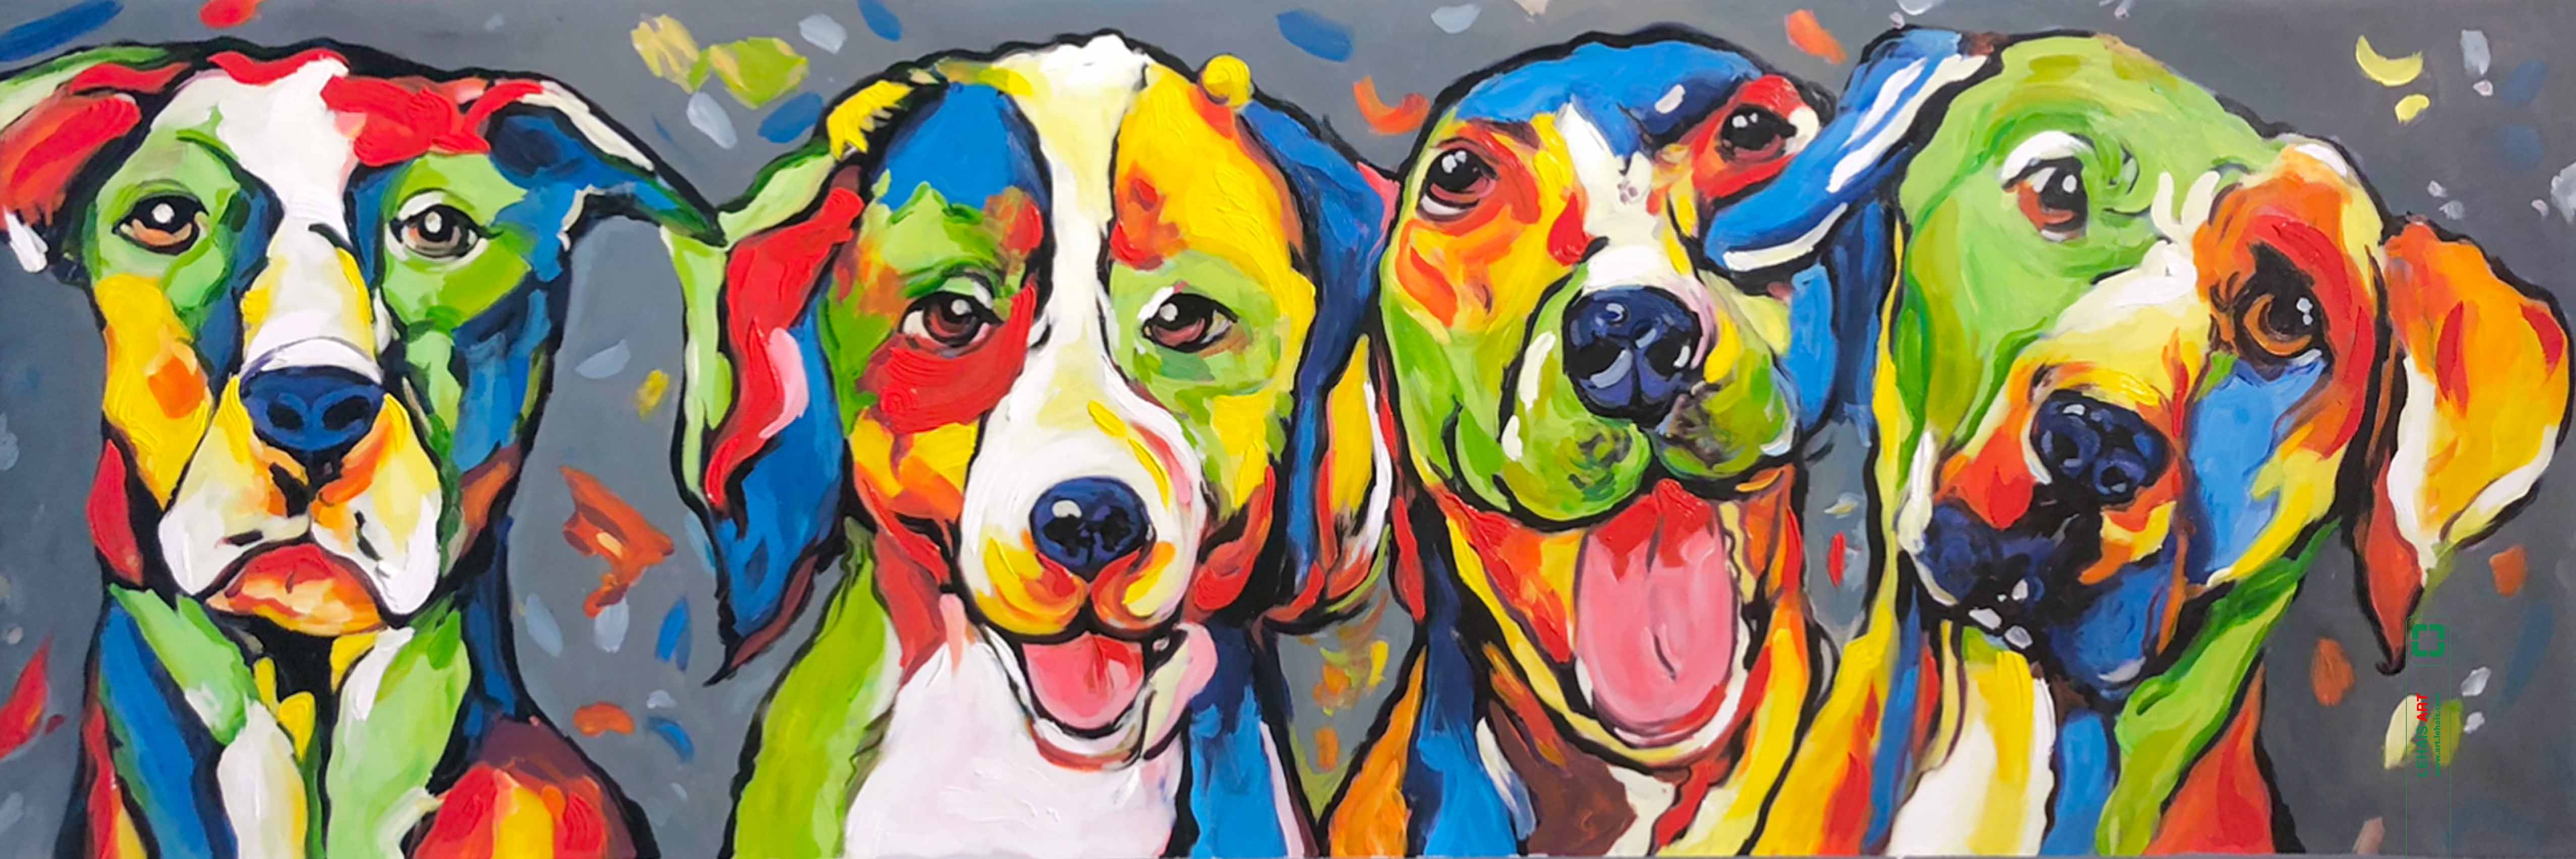 Tranh sơn dầu vẽ những con chó ngộ nghĩnh theo phong cách hiện đại - TSD771LHAR